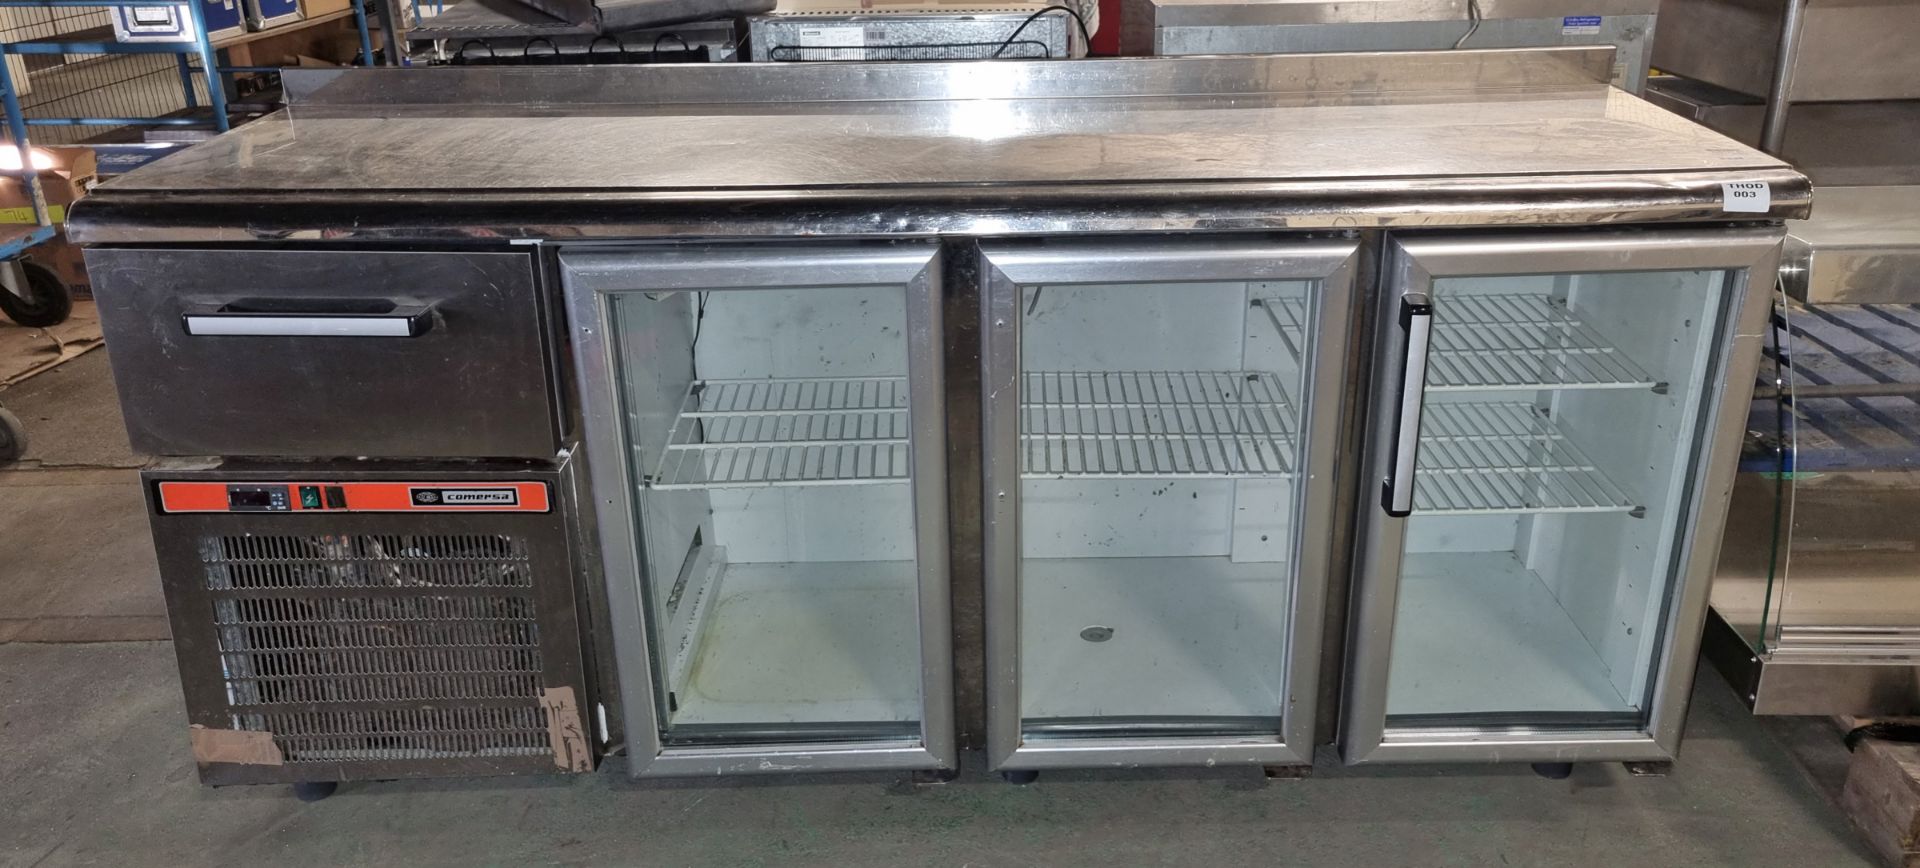 Comersa glass fronted 3 door fridge with stainless steel worktop